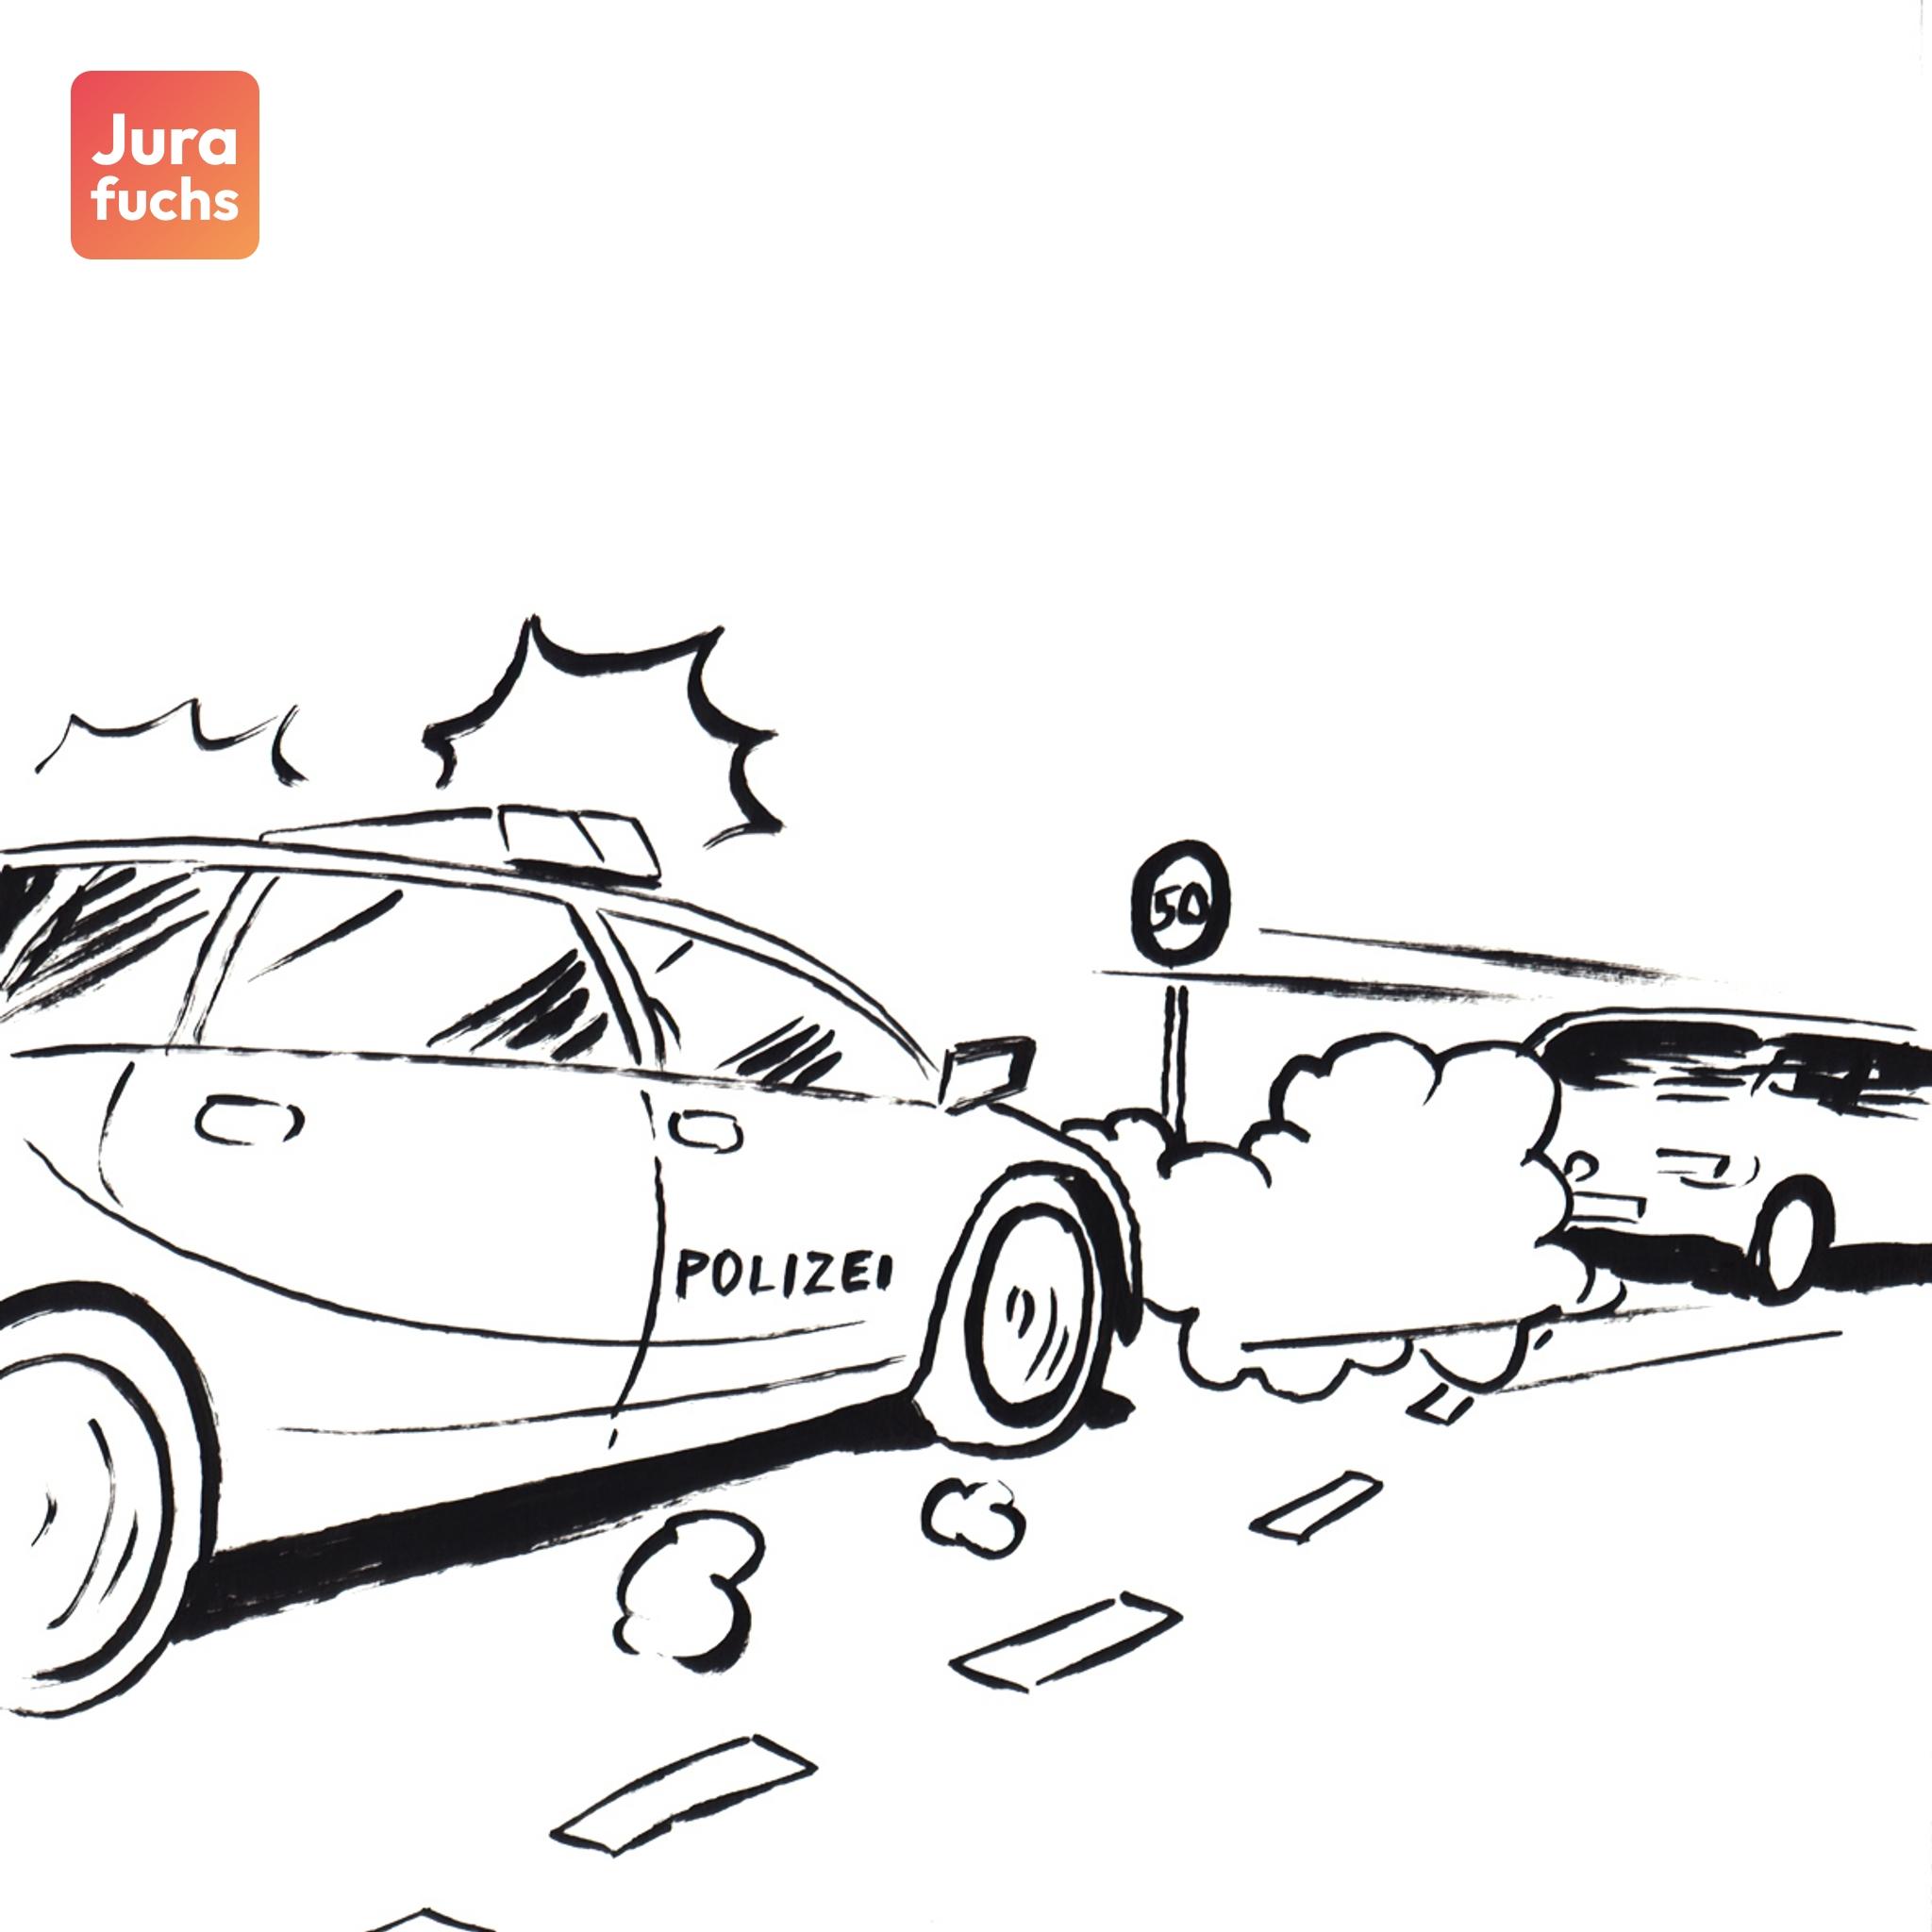 Jurafuchs-Illustration: T flieht in einem Auto mit hoher Geschwindigkeit vor einer Polizeistreife.